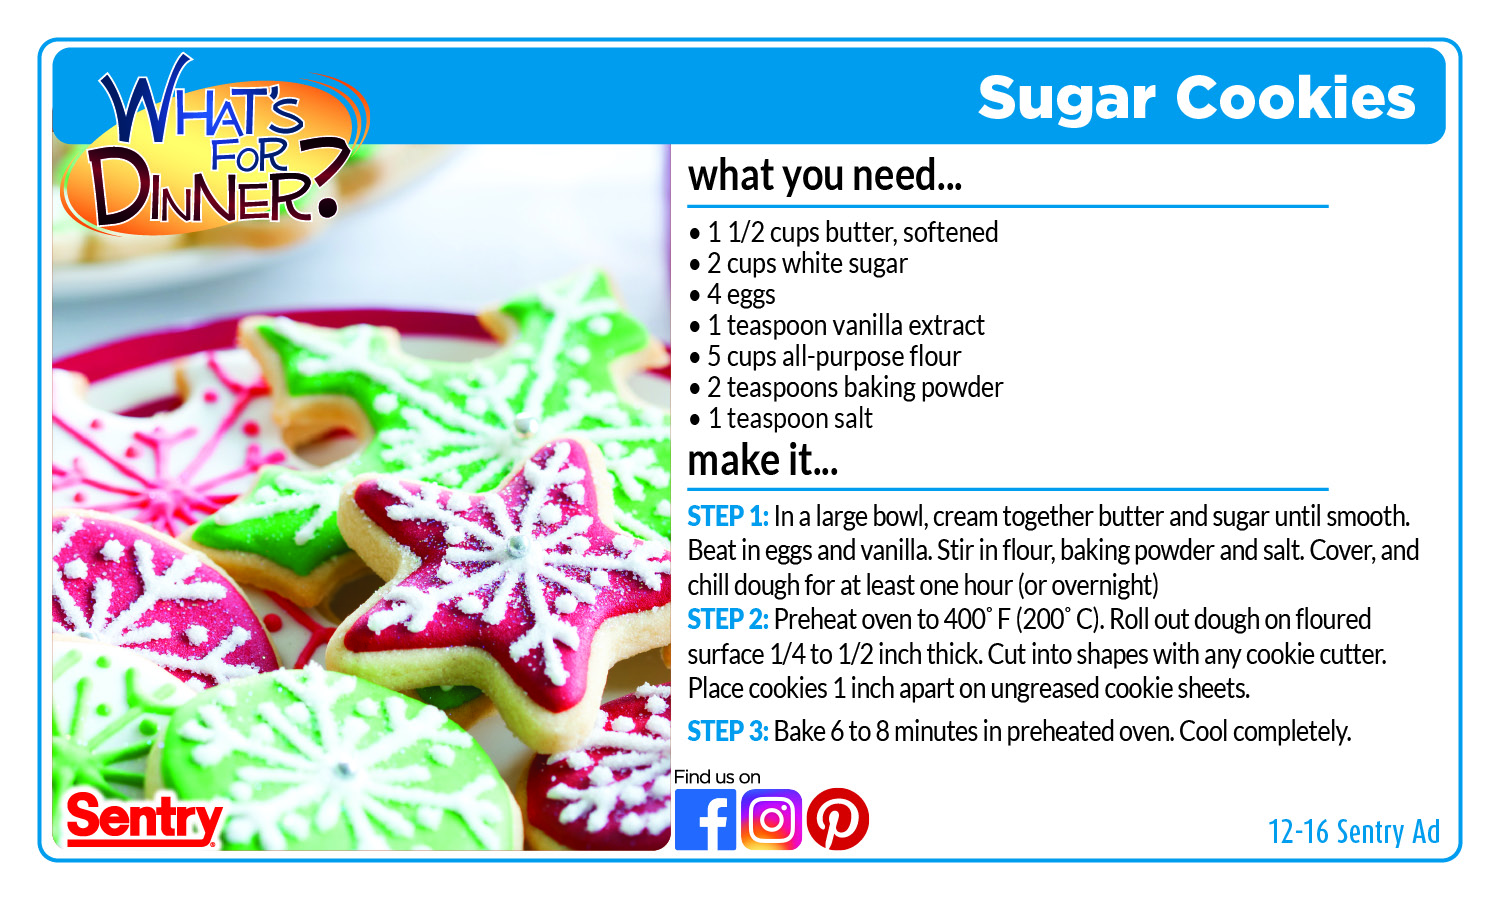 Recipe for Sugar Cookies